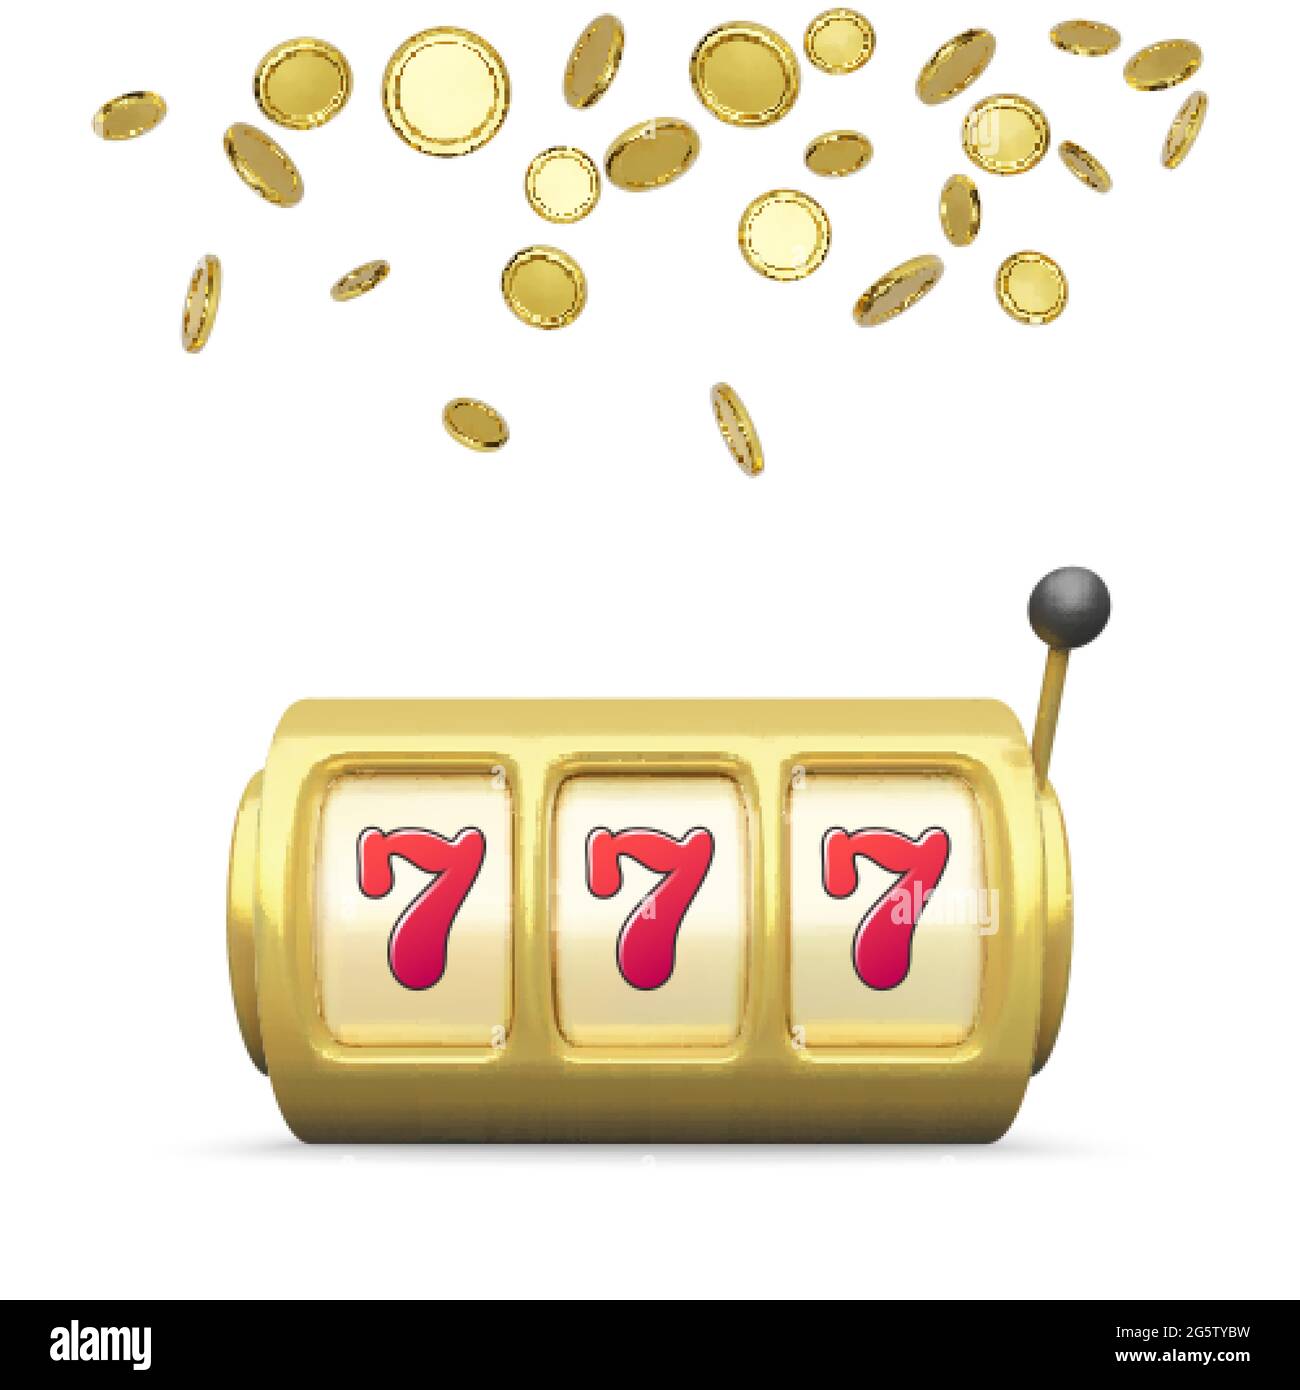 Golden Spielautomat realistische Rendering. Großer Gewinn beim Jackpot-Casino-Gewinn. 777 auf Spielautomaten Räder und Münzen regen auf Hintergrund. Vektorgrafik isol Stock Vektor